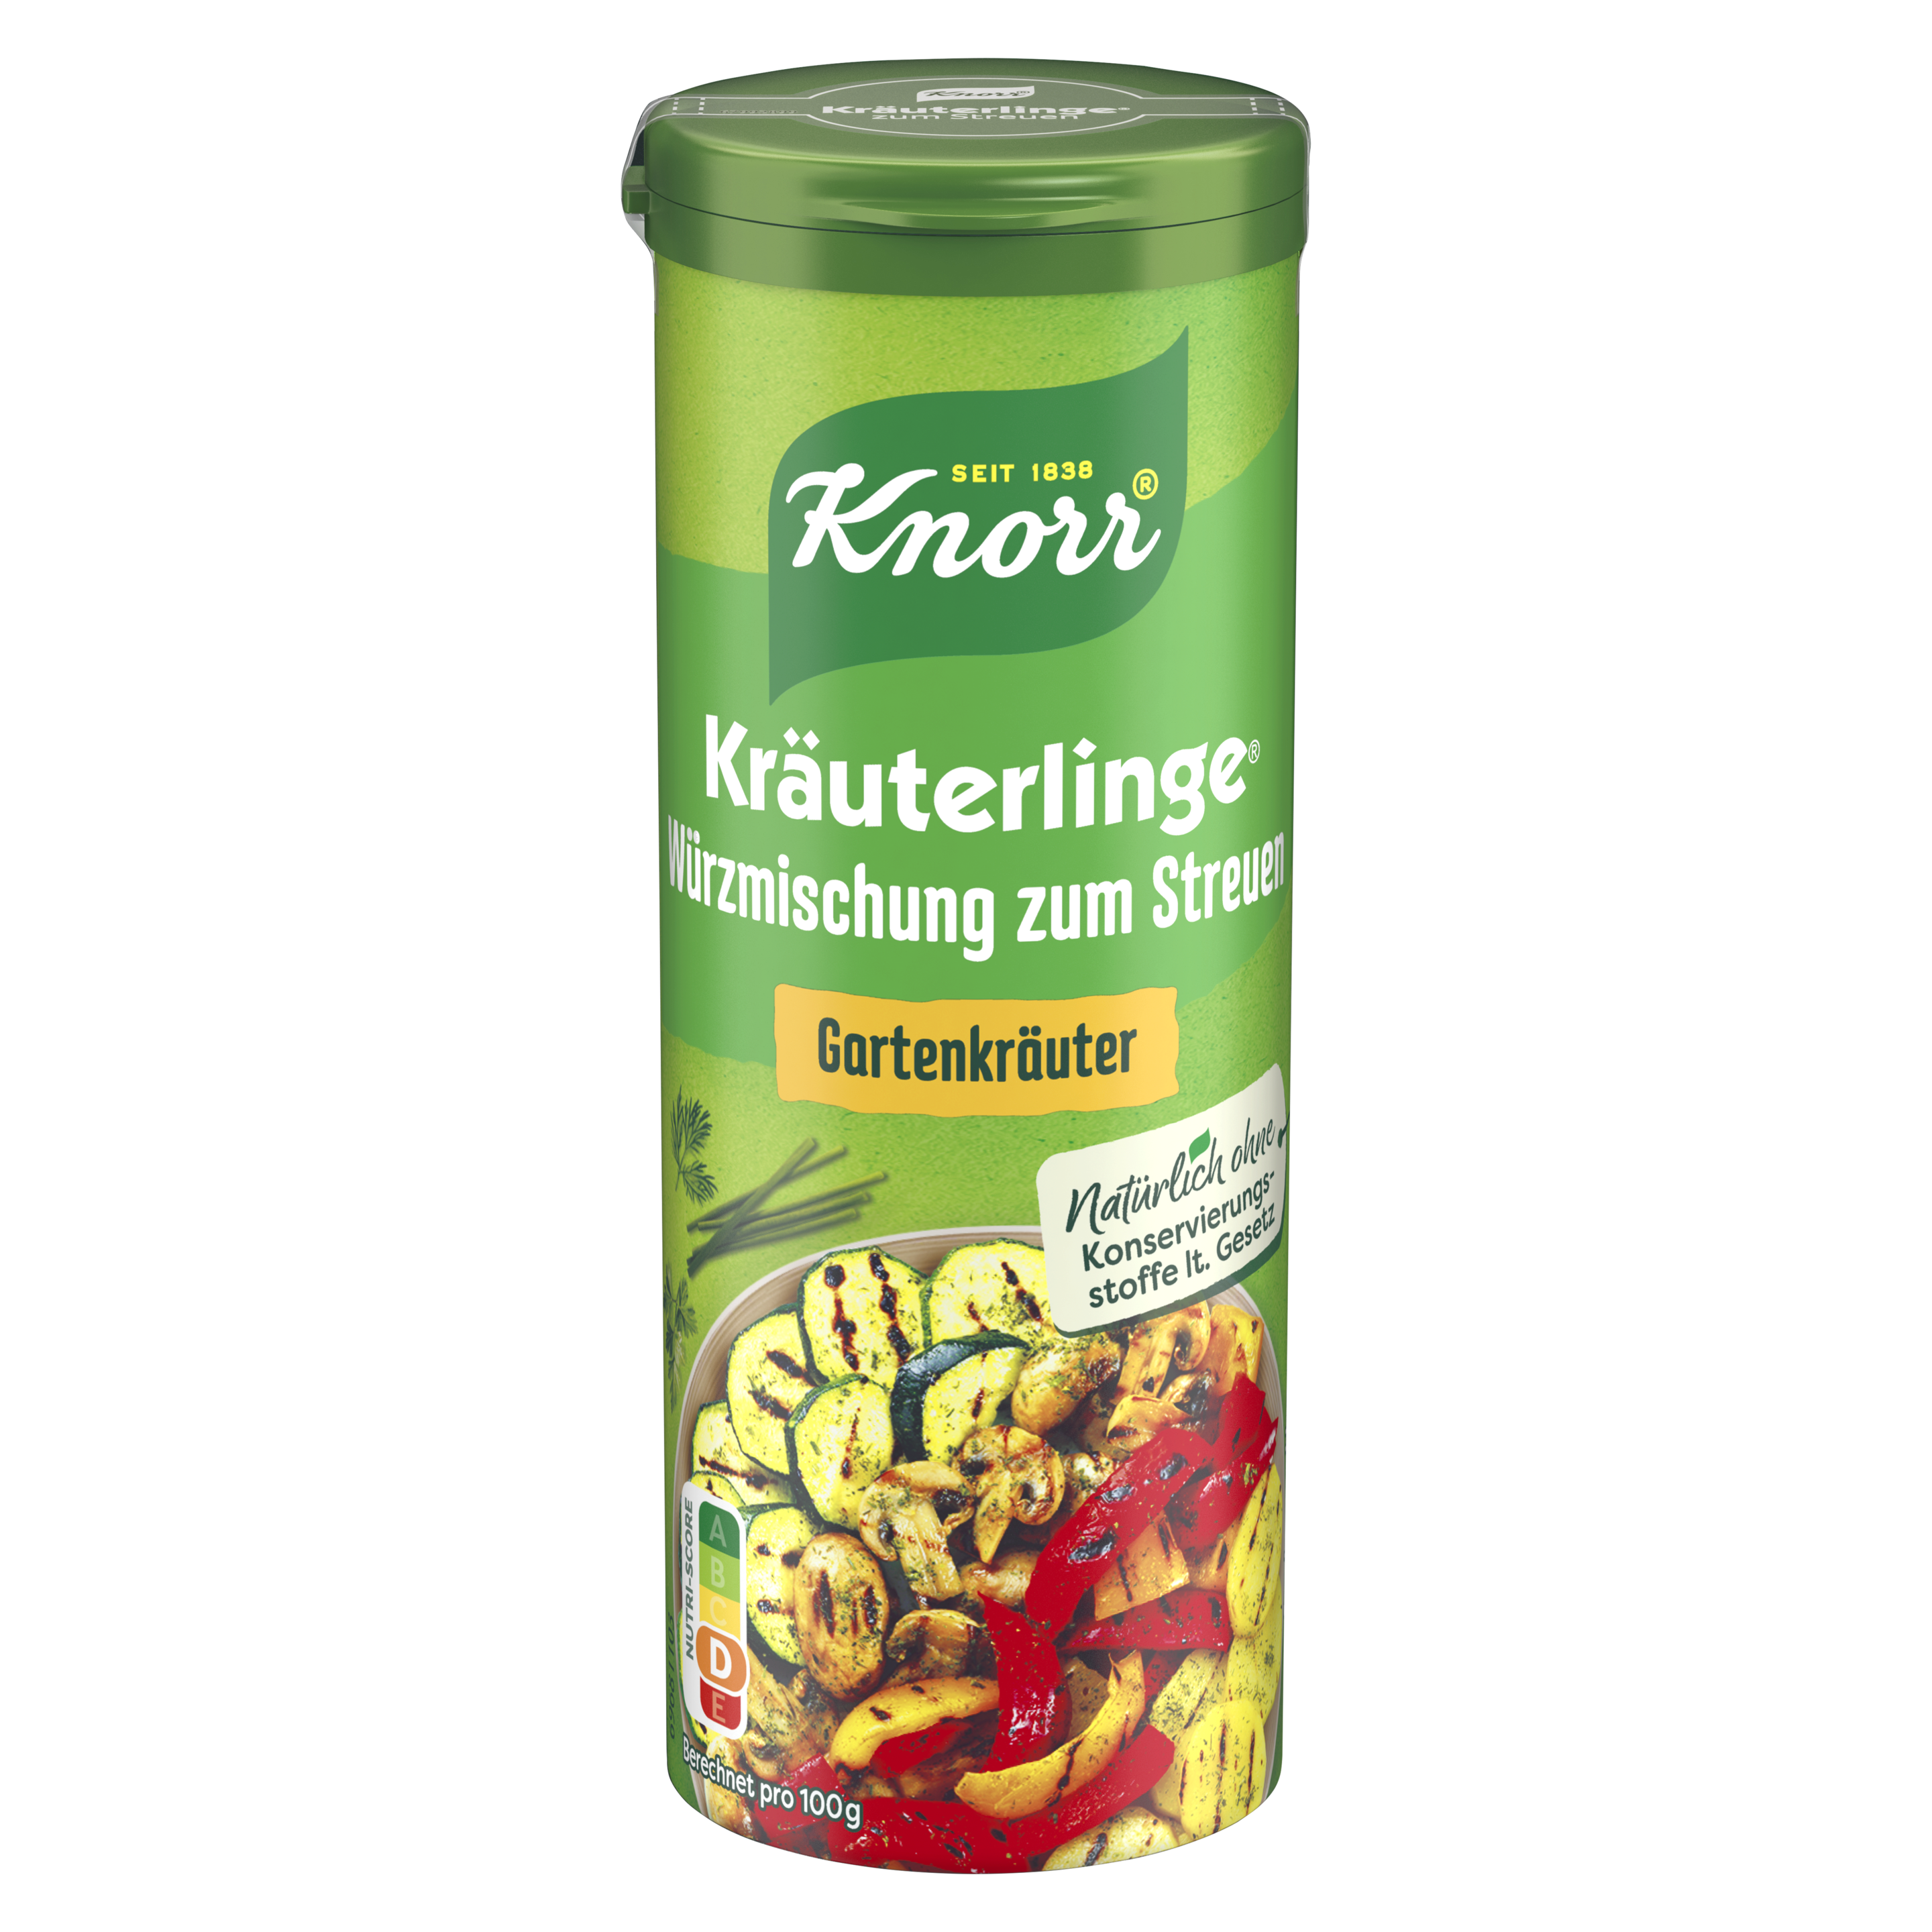 Knorr Deutschland